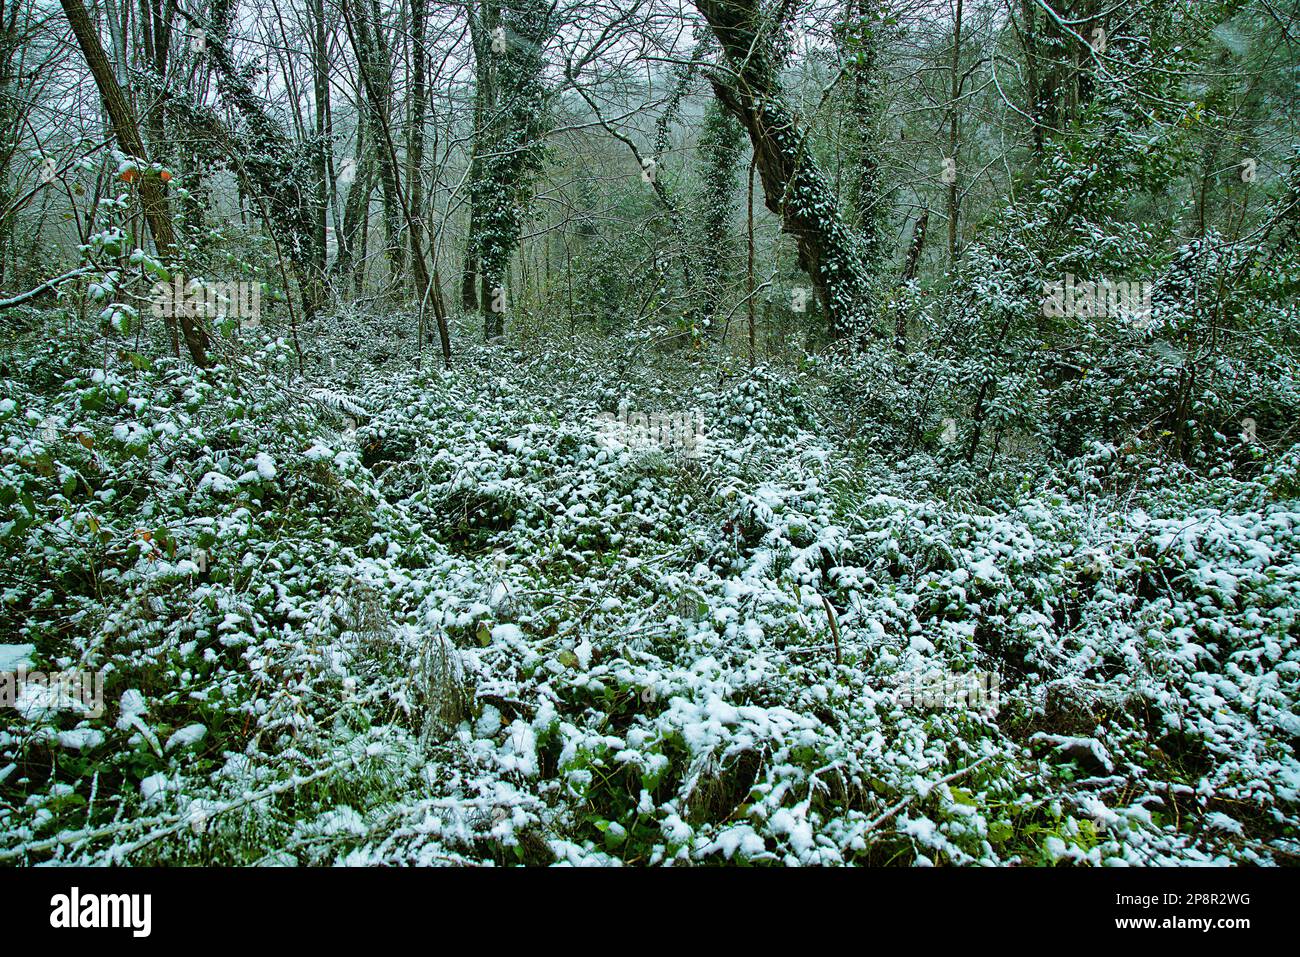 Früher Schnee. Herbstdickichte aus Brombeeren, Clematis und anderen Lianen sind mit Schnee bedeckt, der für den Süden unerwartet ist. Hainbuche-Wald Stockfoto